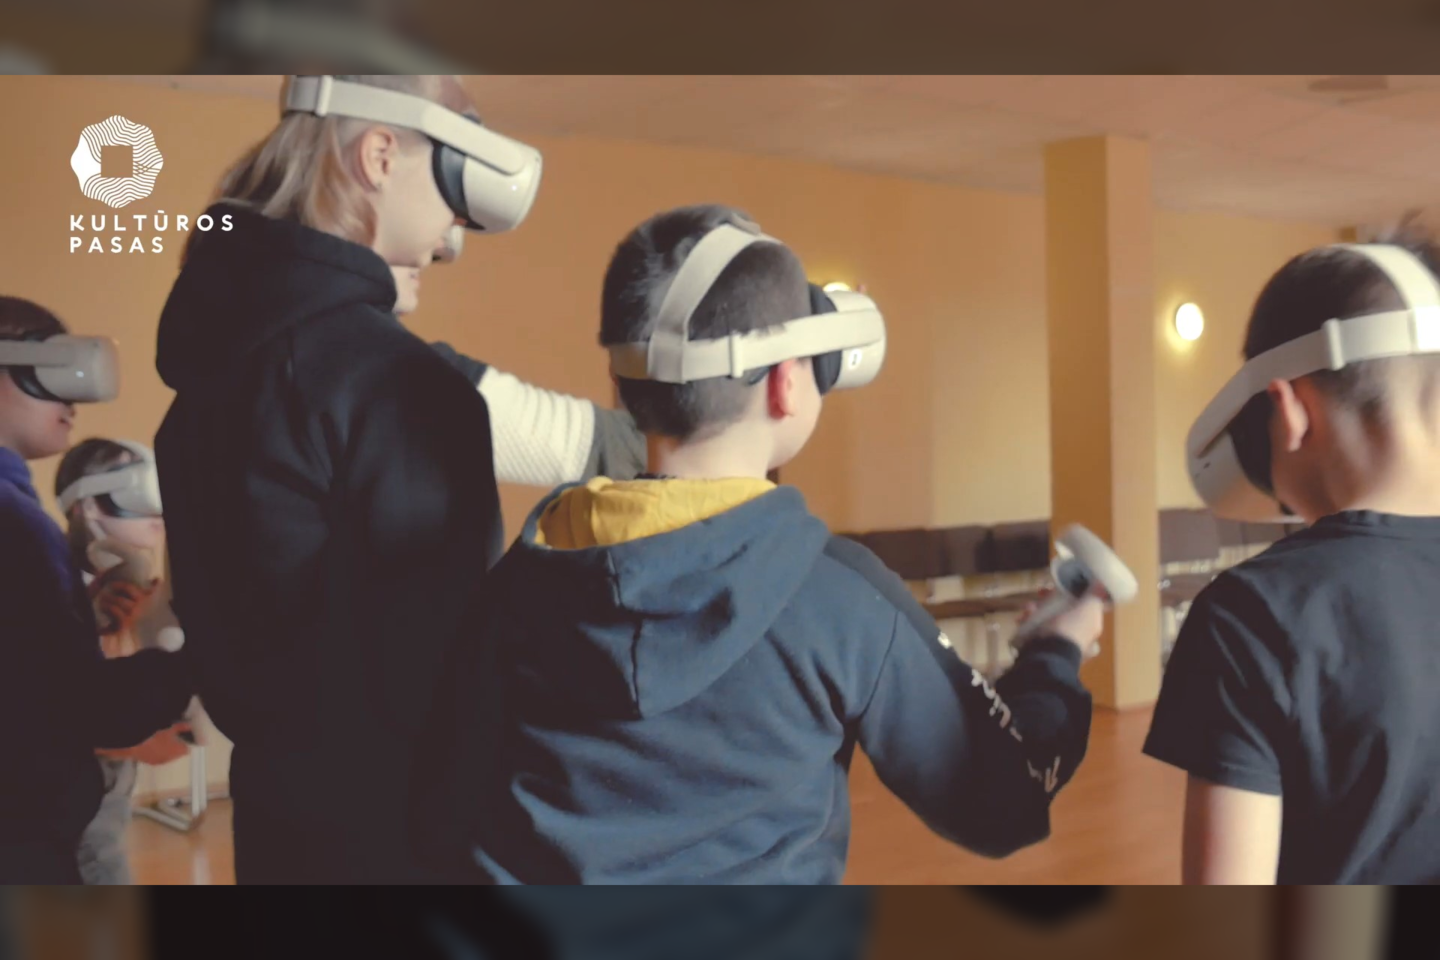  Lietuvių įmonė „Magic Calf“ neseniai pristatė edukacinę programą „Partizanų paslaptys“, kurios metu moksleiviai, naudodamiesi virtualios realybės įranga, gali pasinerti į Laisvės kovų laikotarpį ir istoriją mokytis netradiciniu būdu.<br> „Youtube“ vaizdo įrašo stopkadras.